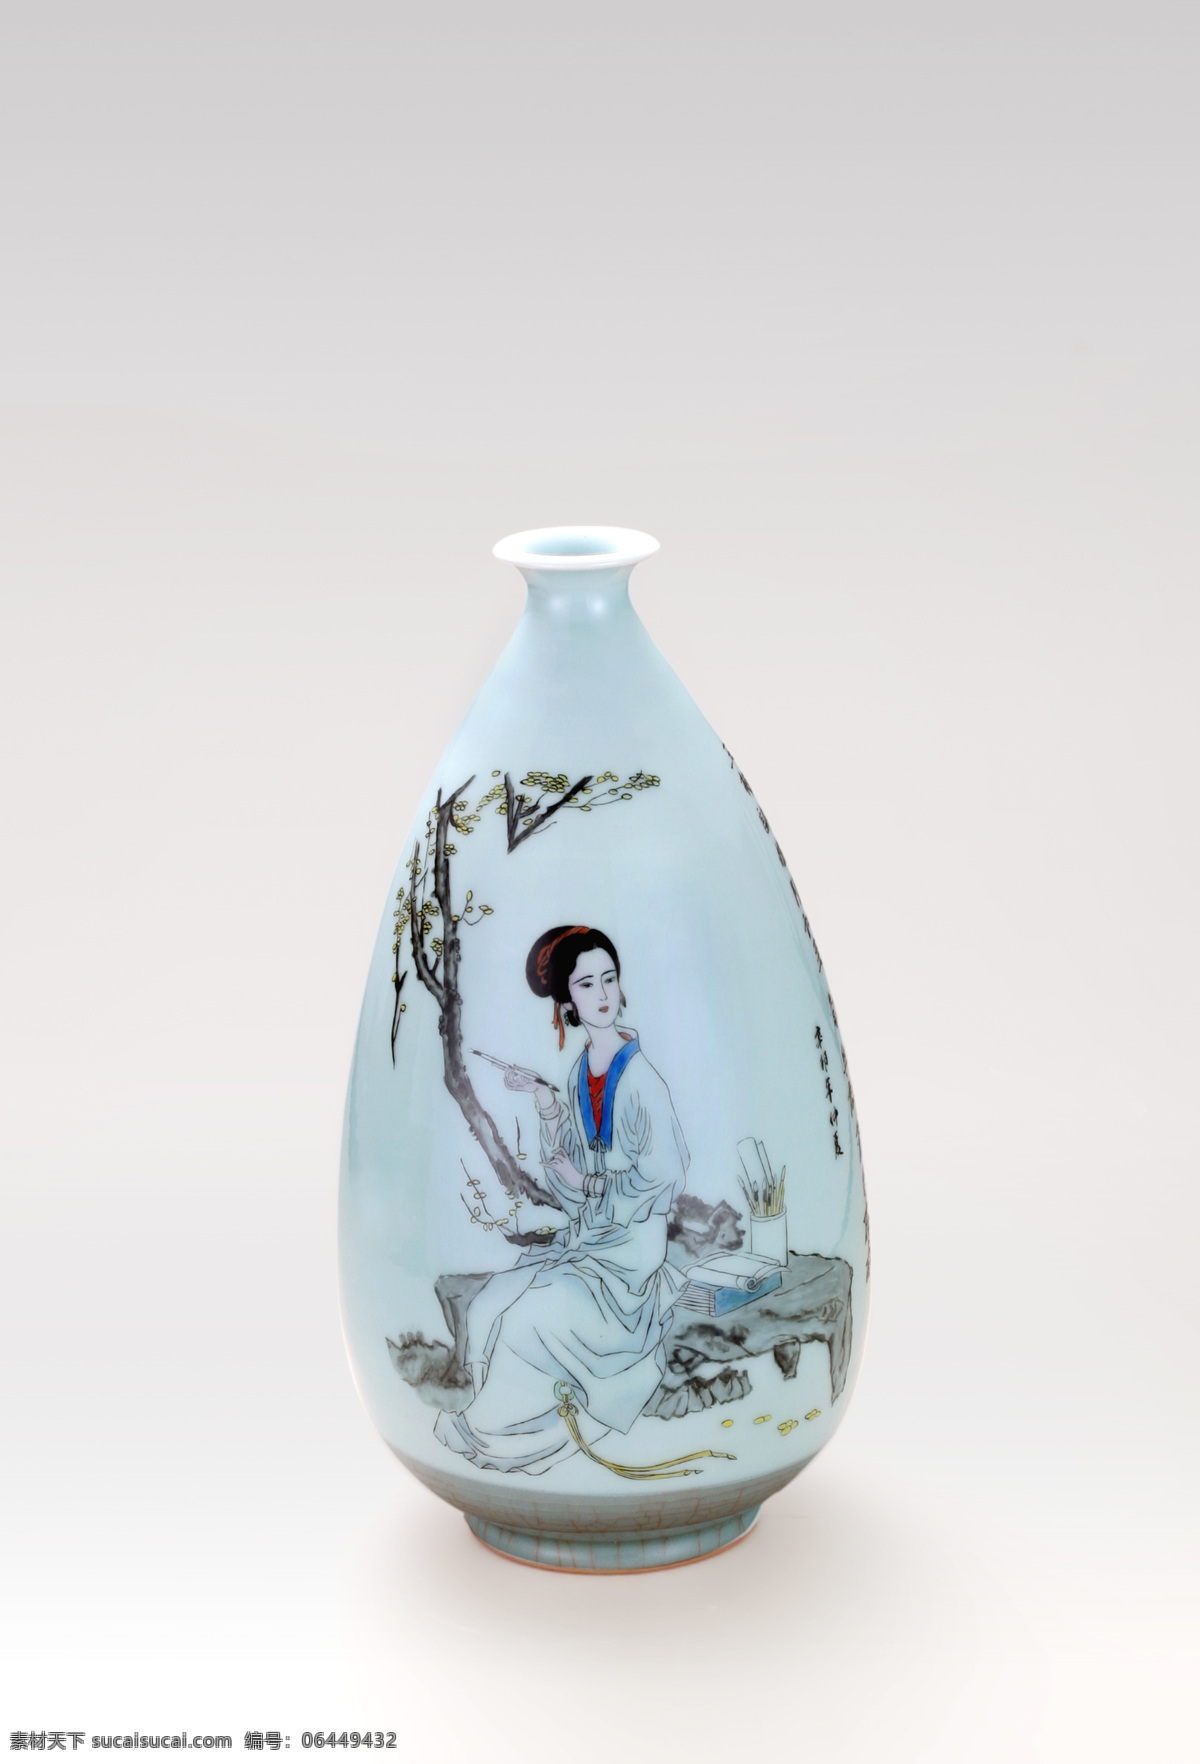 龙泉 青瓷 手绘 瓷瓶 龙泉青瓷 仕女图 装饰精品 彩瓷瓶 传统文化 文化艺术